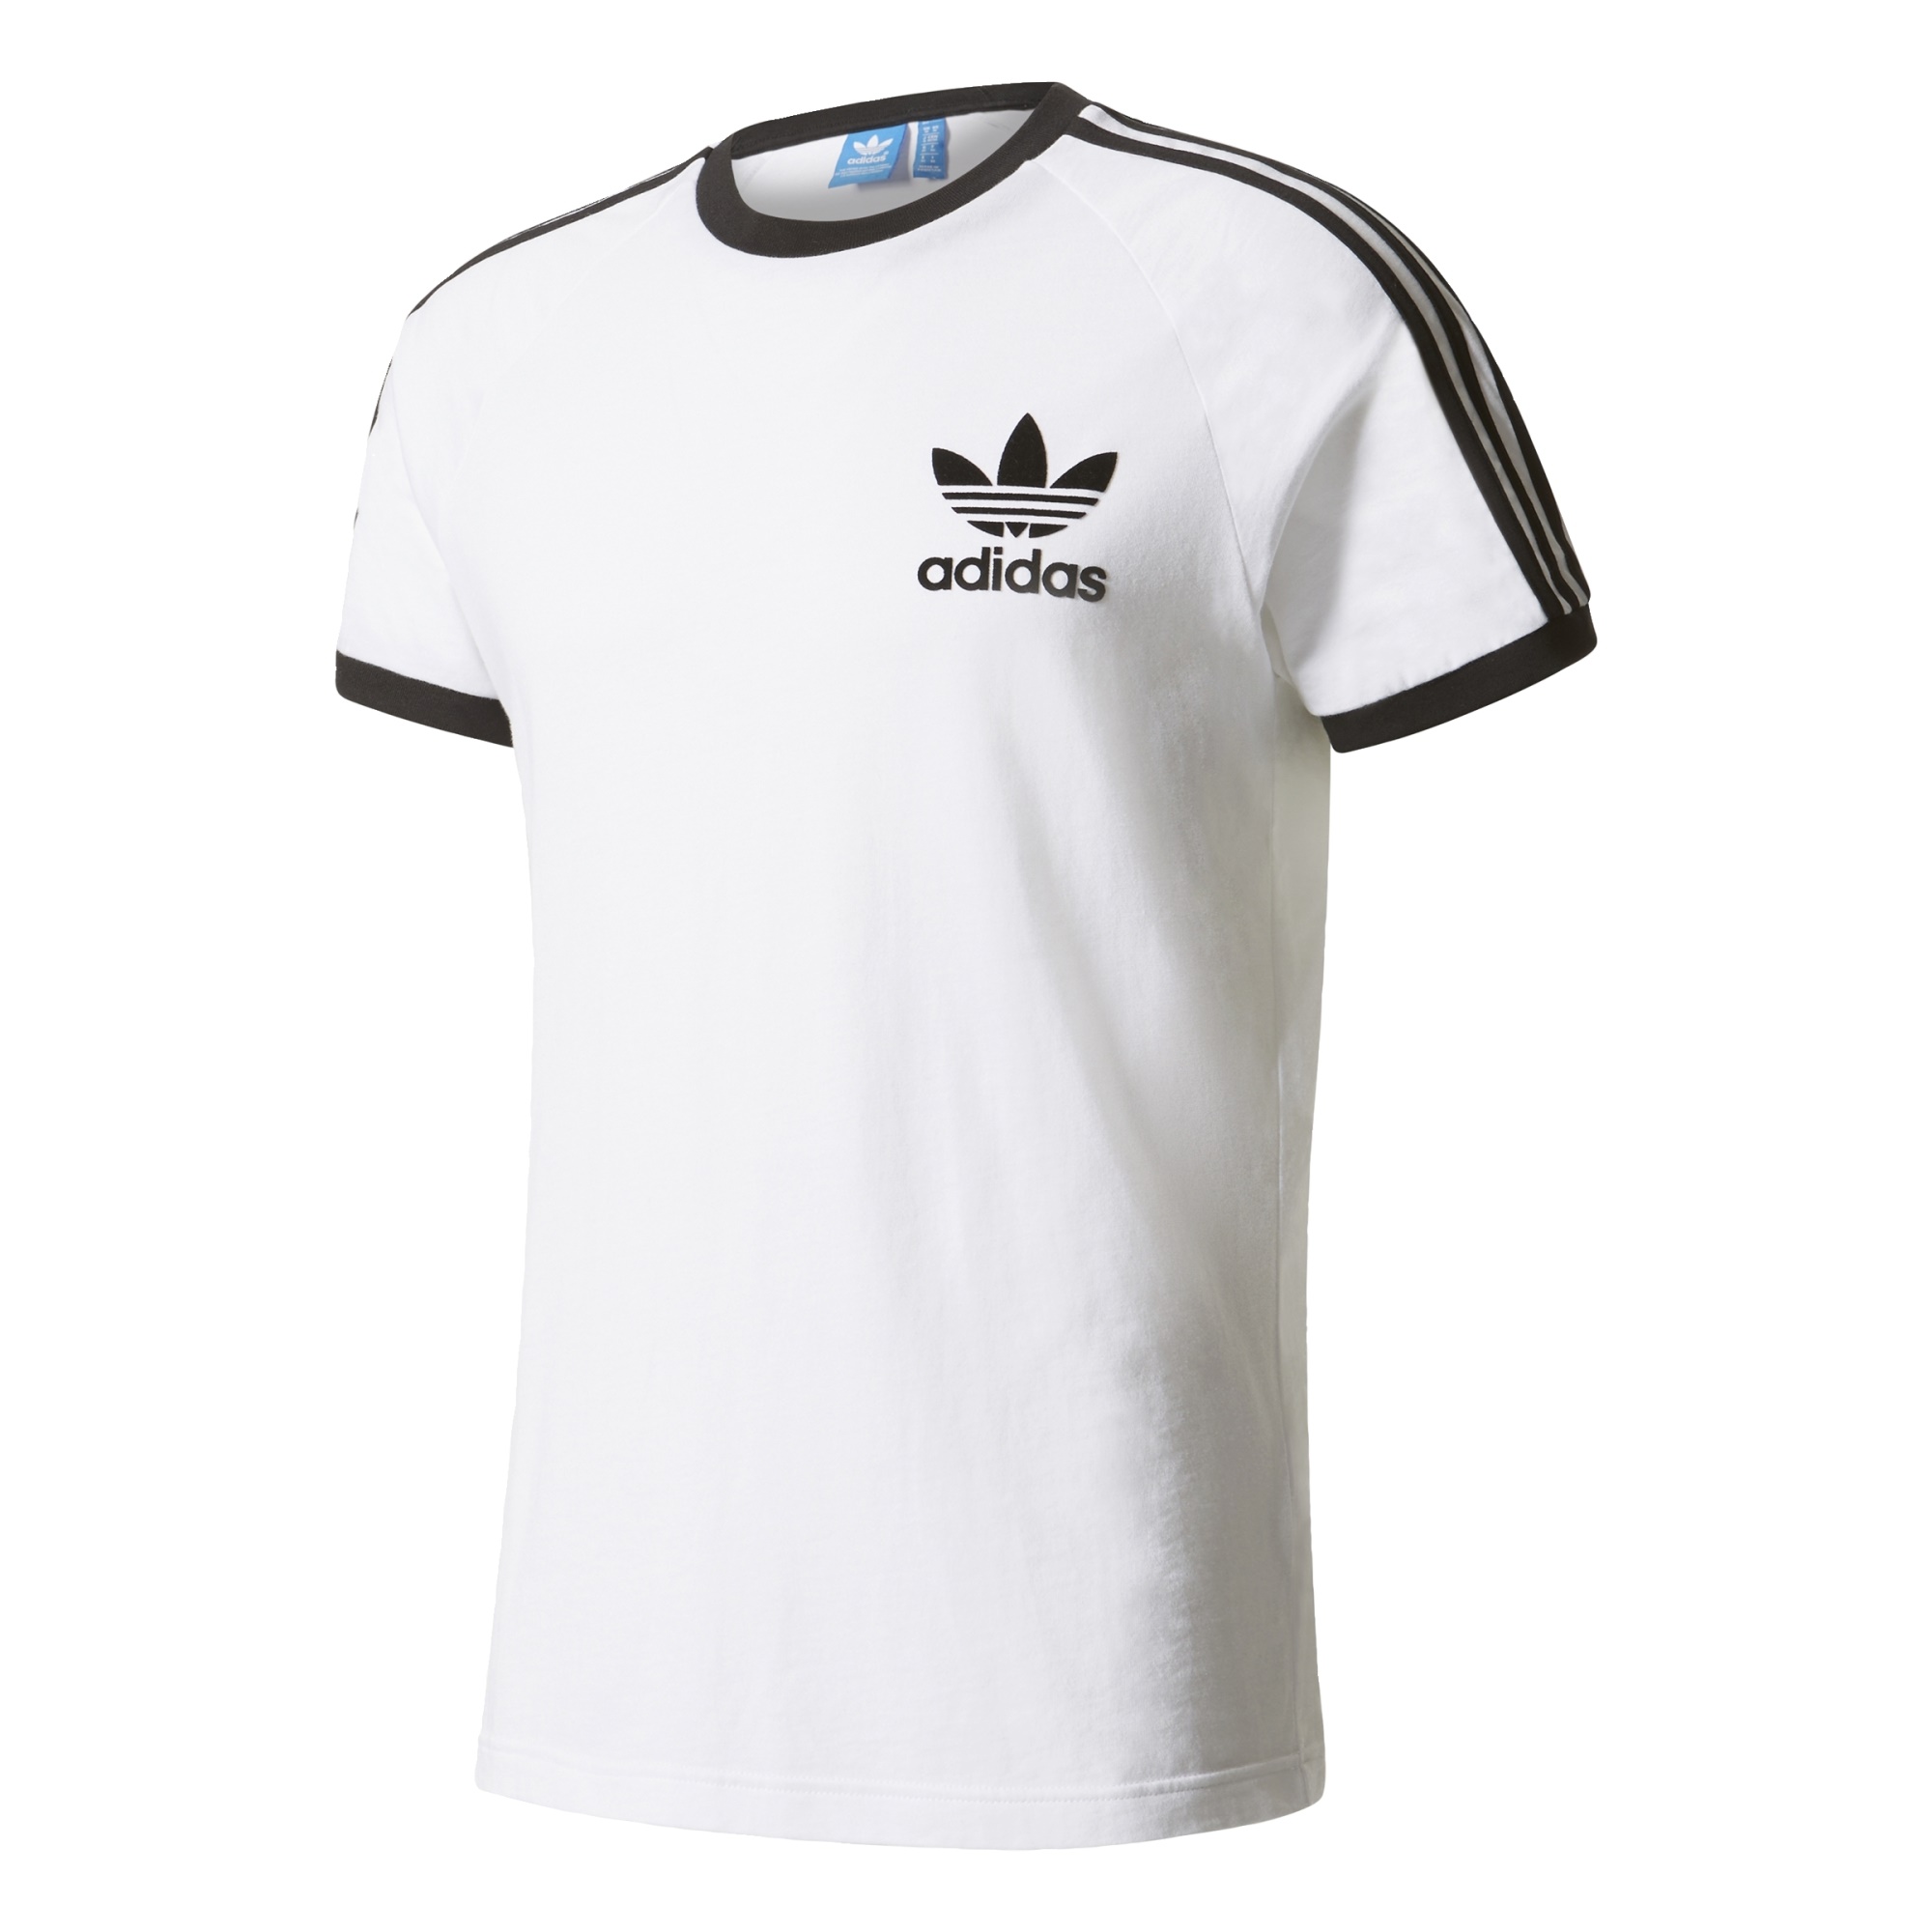 pastor oasis Fácil de suceder Adidas Originals Camiseta CLFN Logo (blanco/negro)